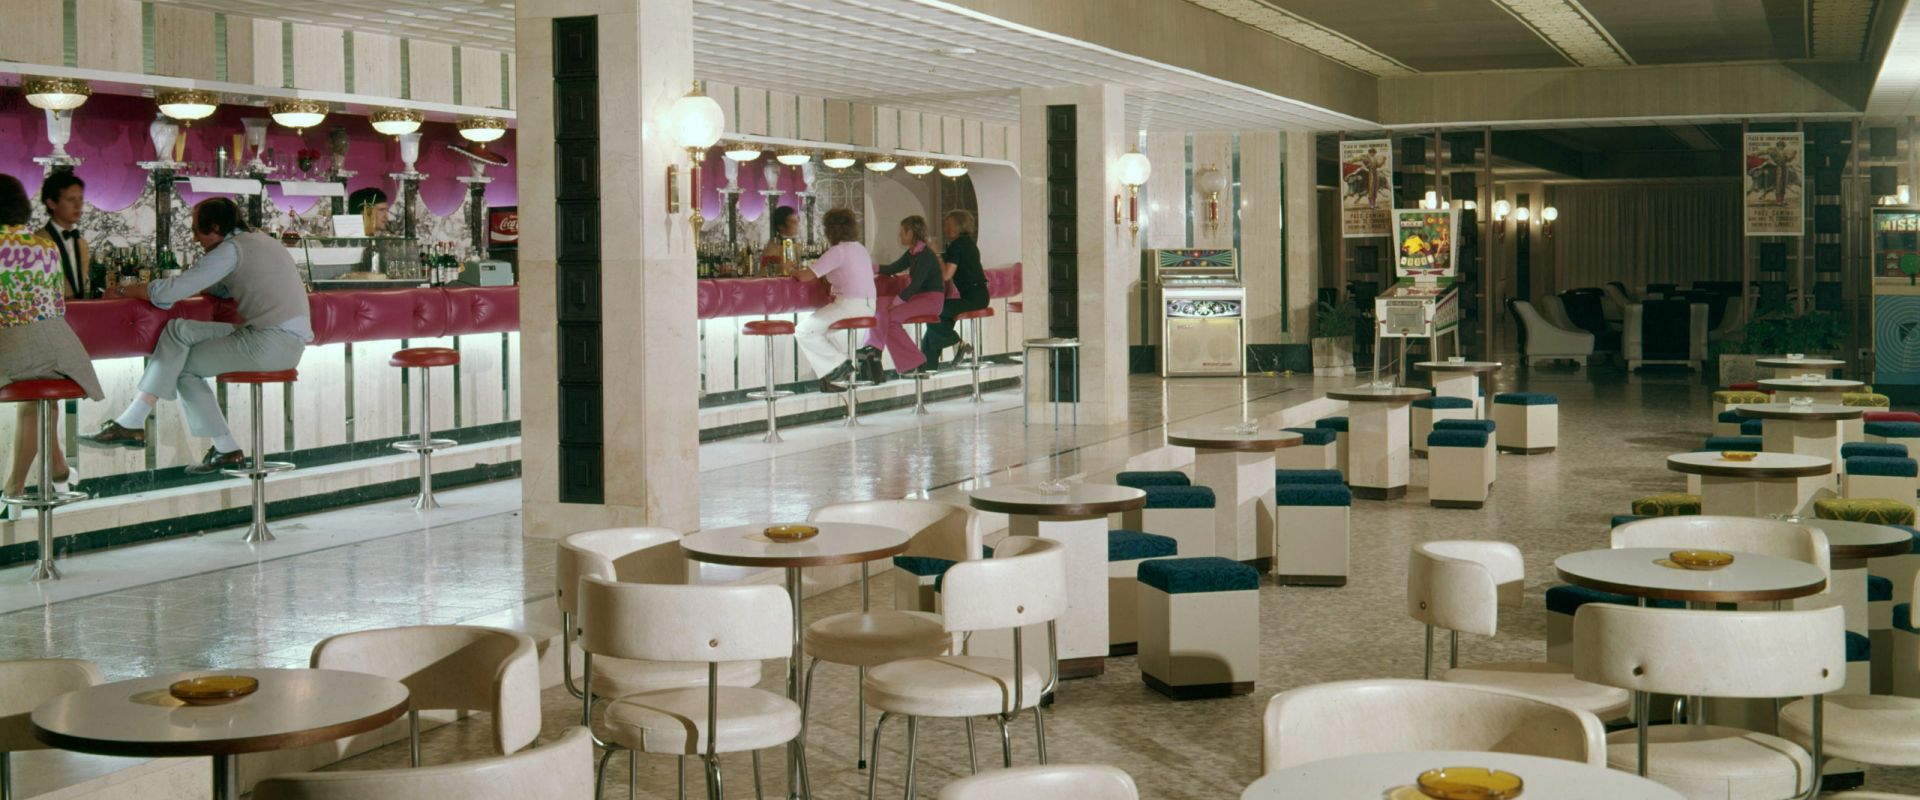 Salón Bar Cafetería 1973 - 001